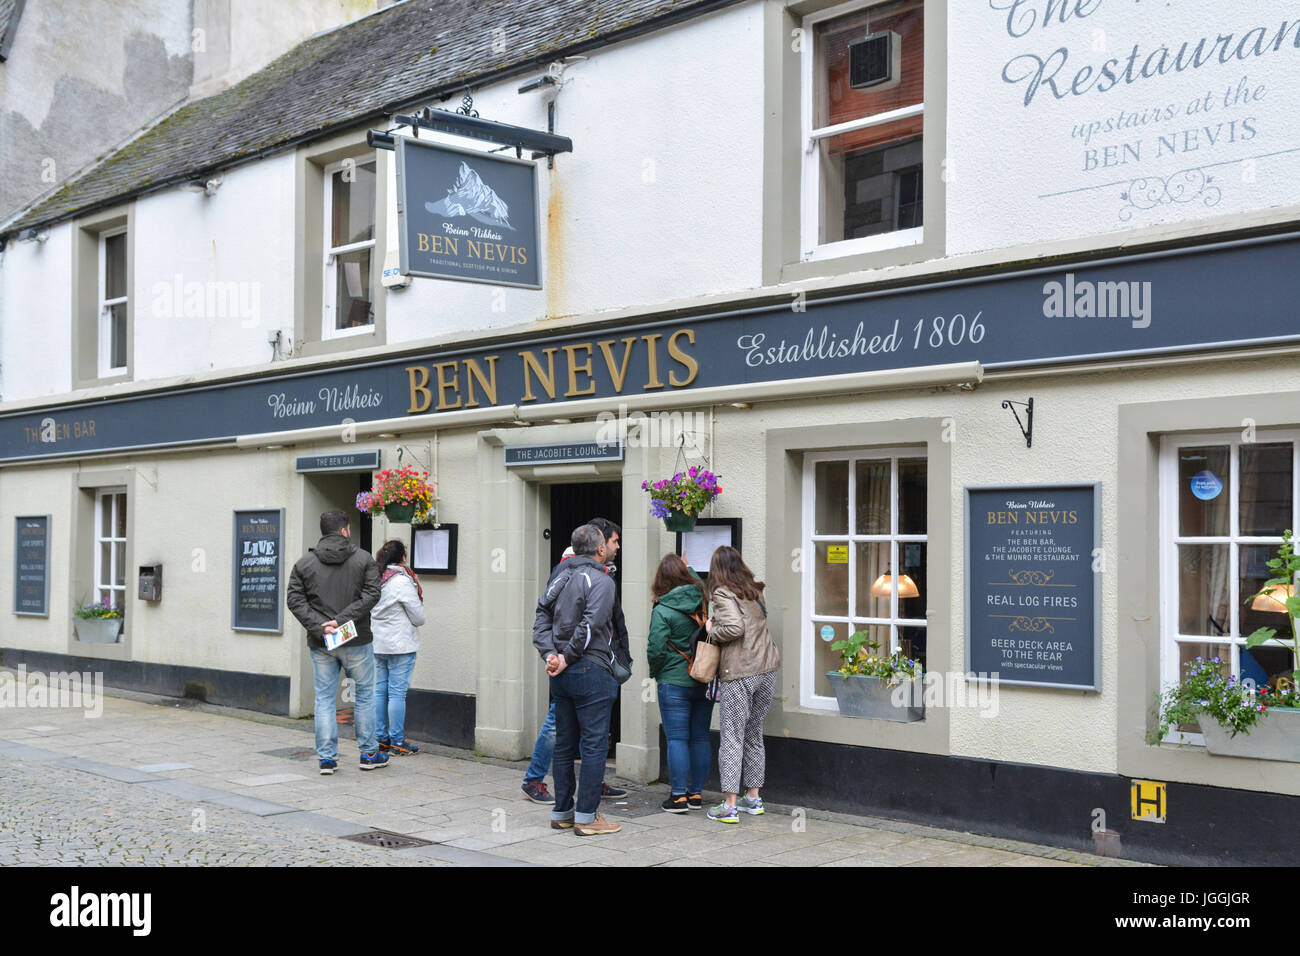 Pub écossais et restaurant - bar Ben Nevis La partie de la goutte n'Inns chain - Fort William, highland, Scotland, UK Banque D'Images